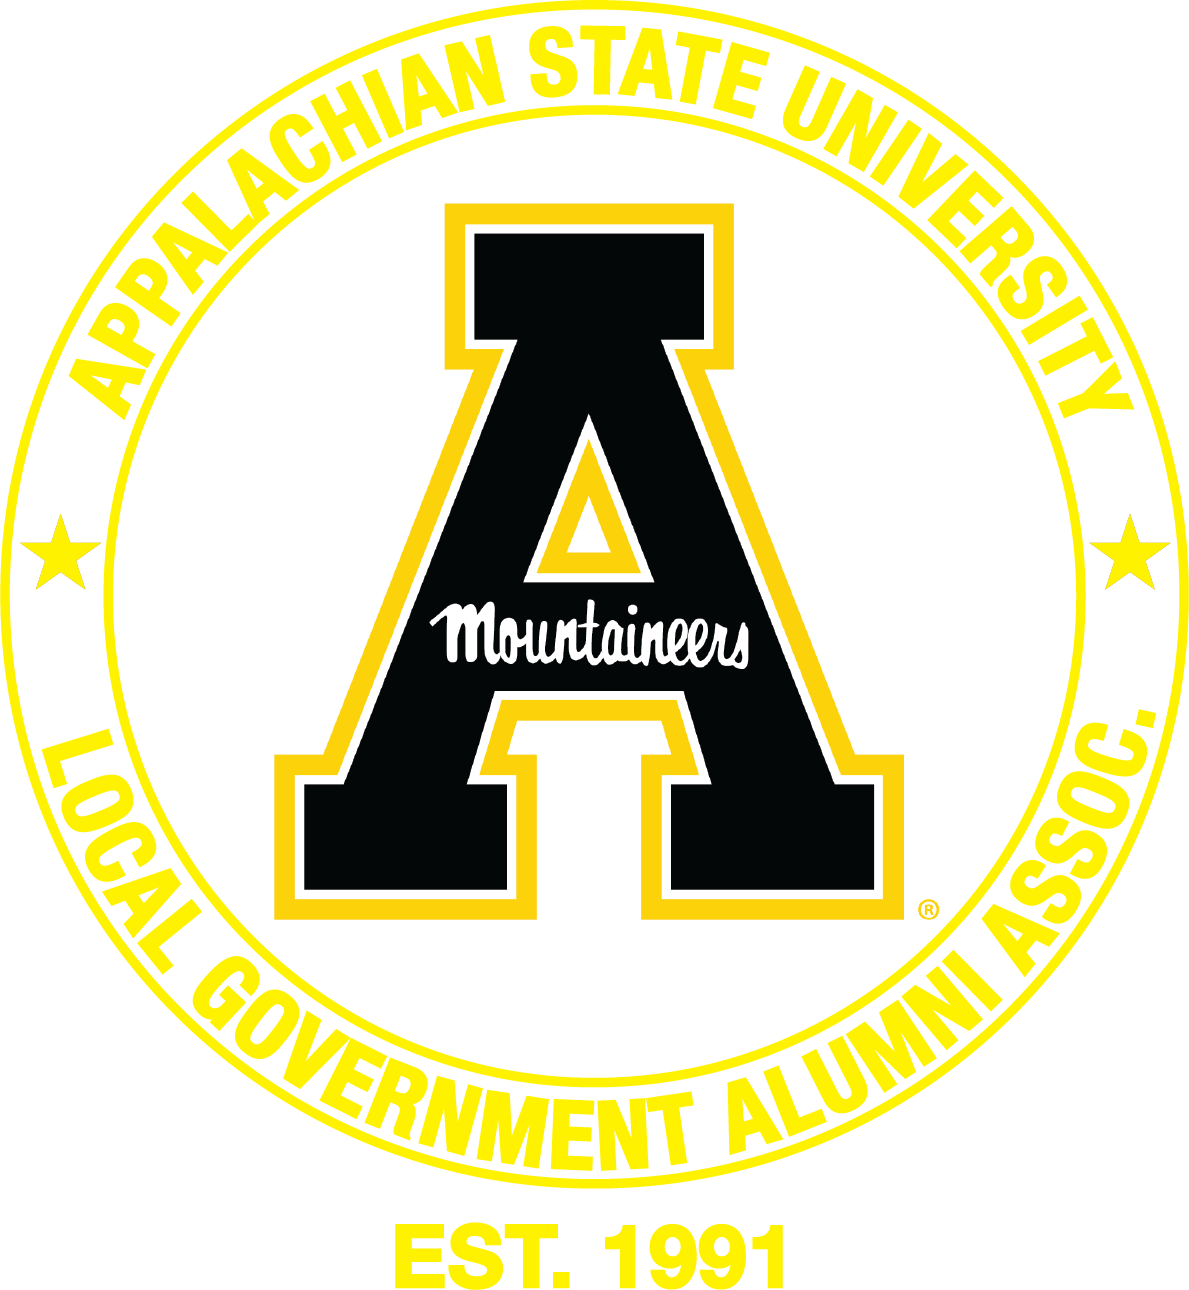 Women's ASU Local Government Alumni Association Polo